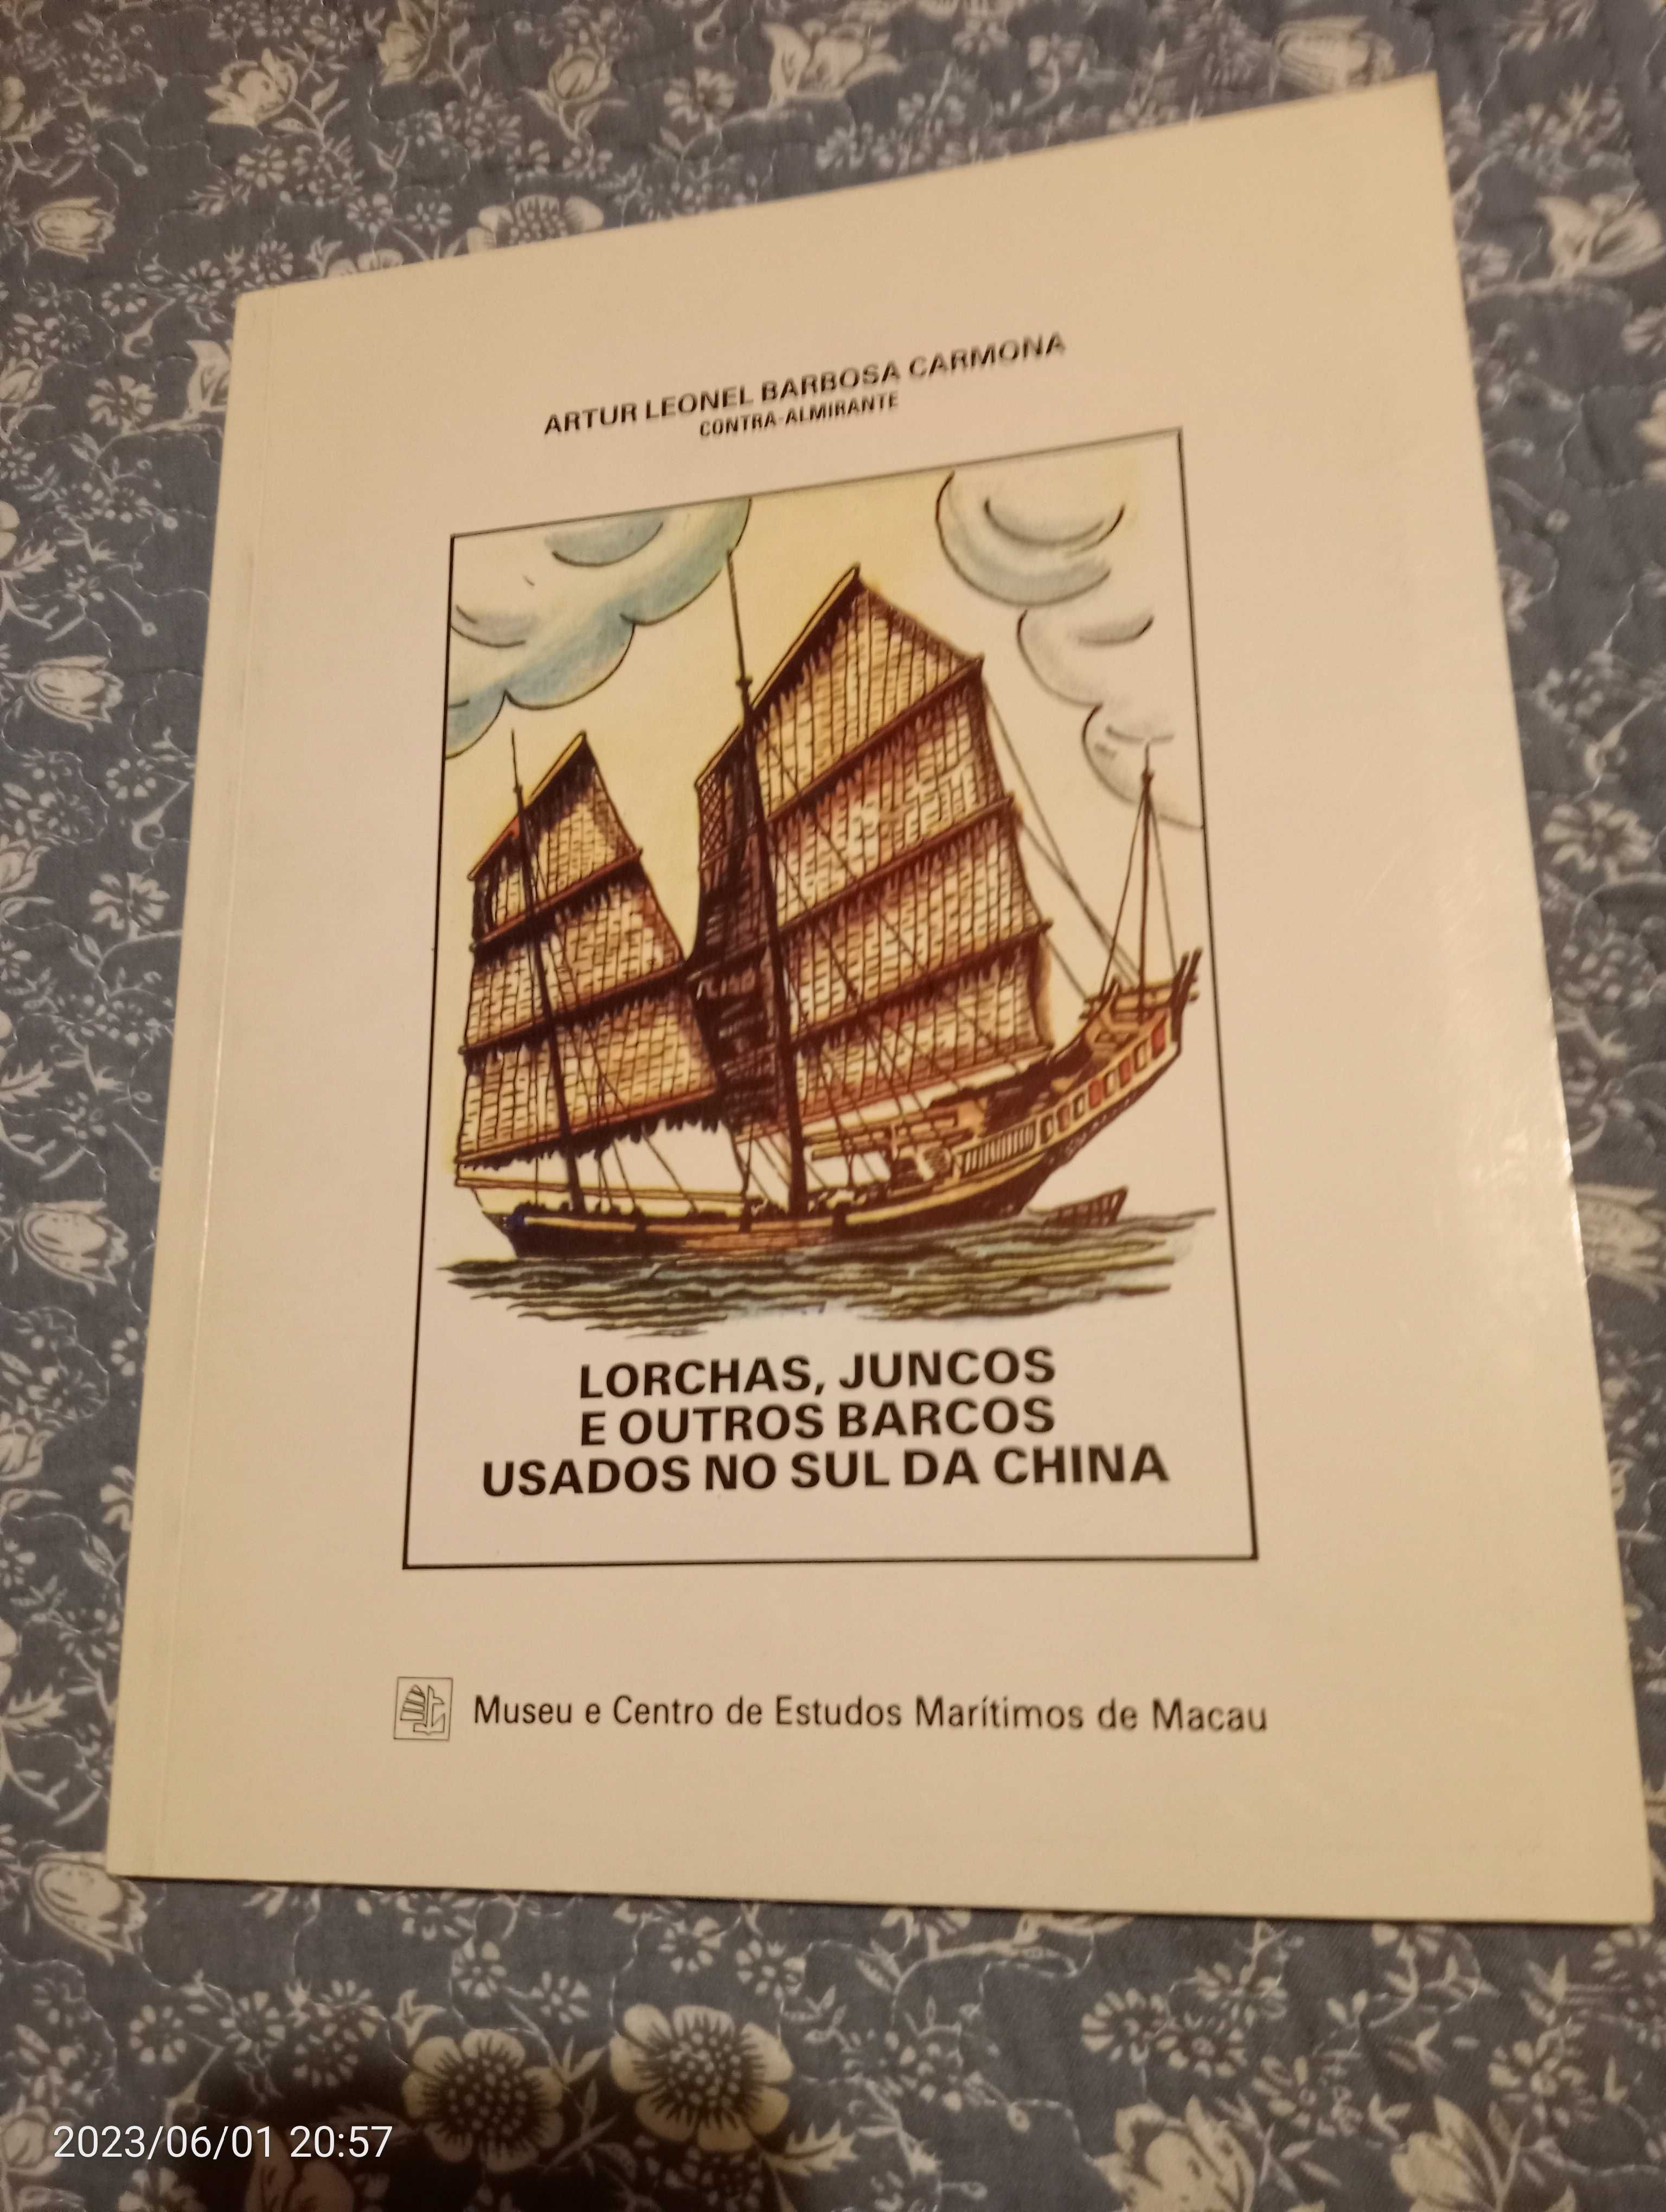 Lorchas, Juncos e outros barcos usados no sul da China.